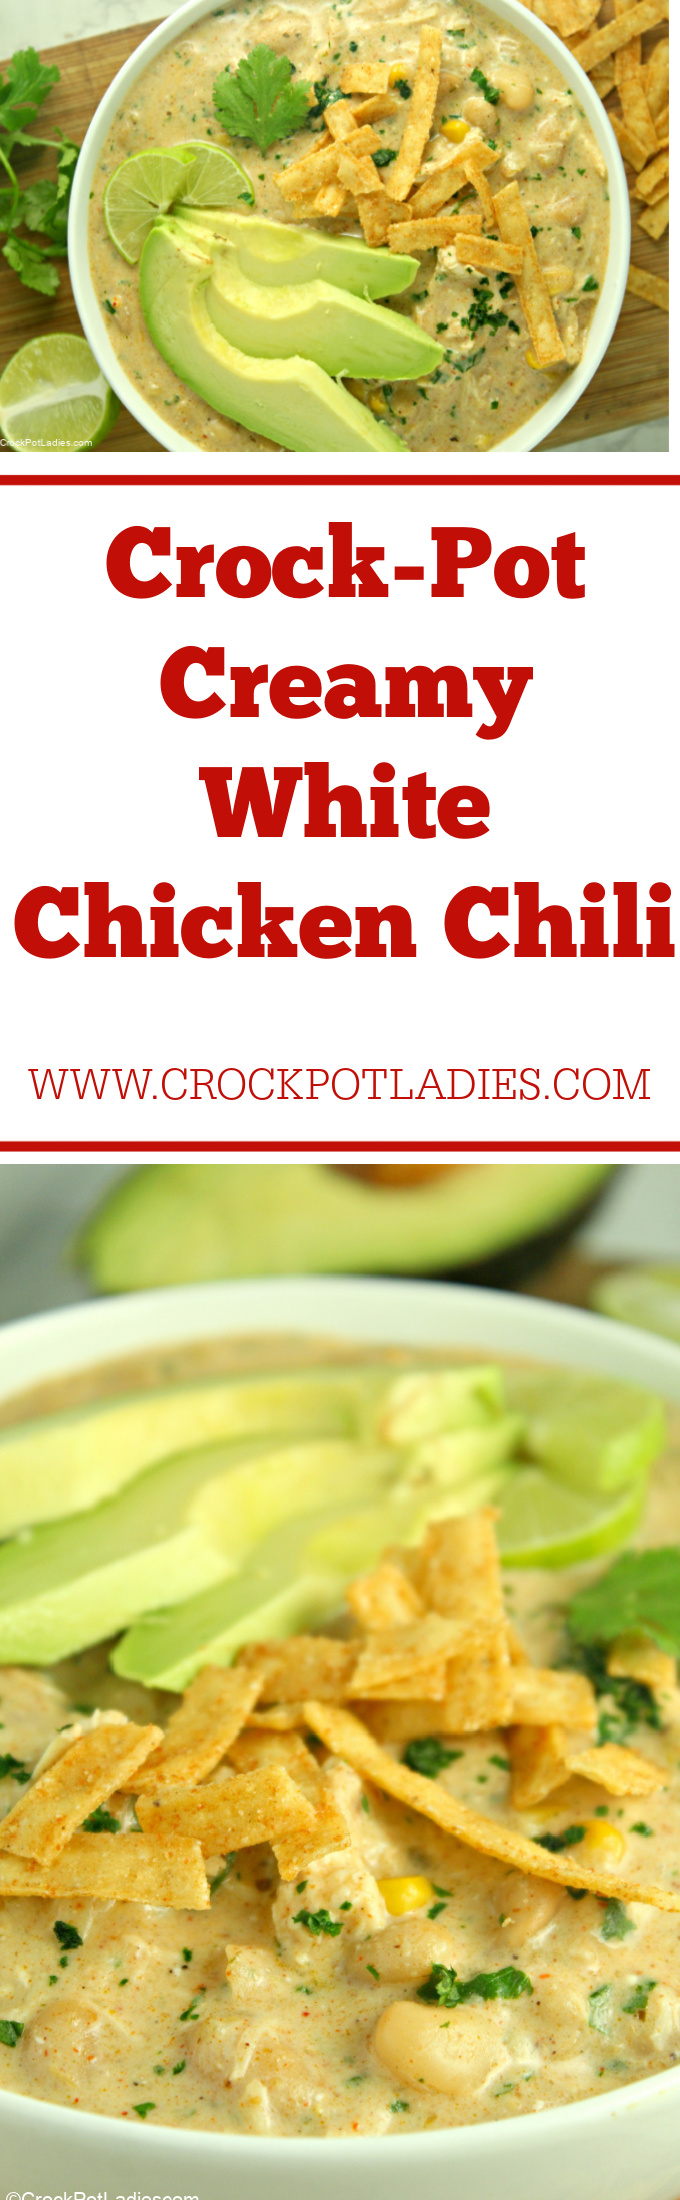 Crock-Pot Creamy White Chicken Chili